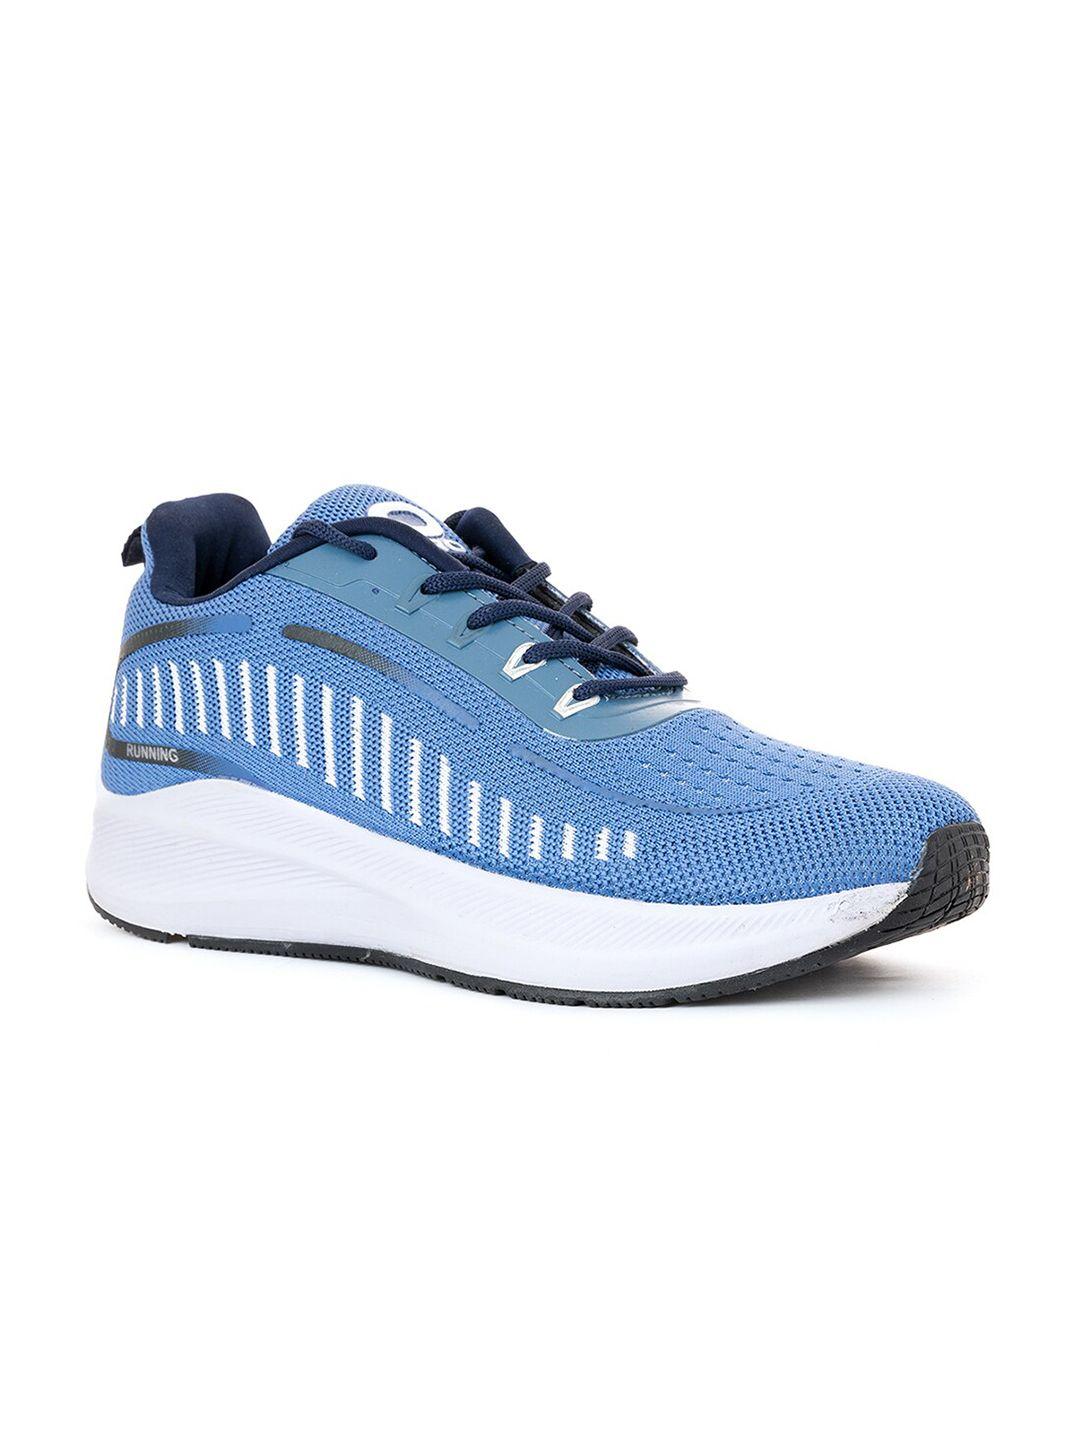 khadims-men-blue-textile-running-shoes